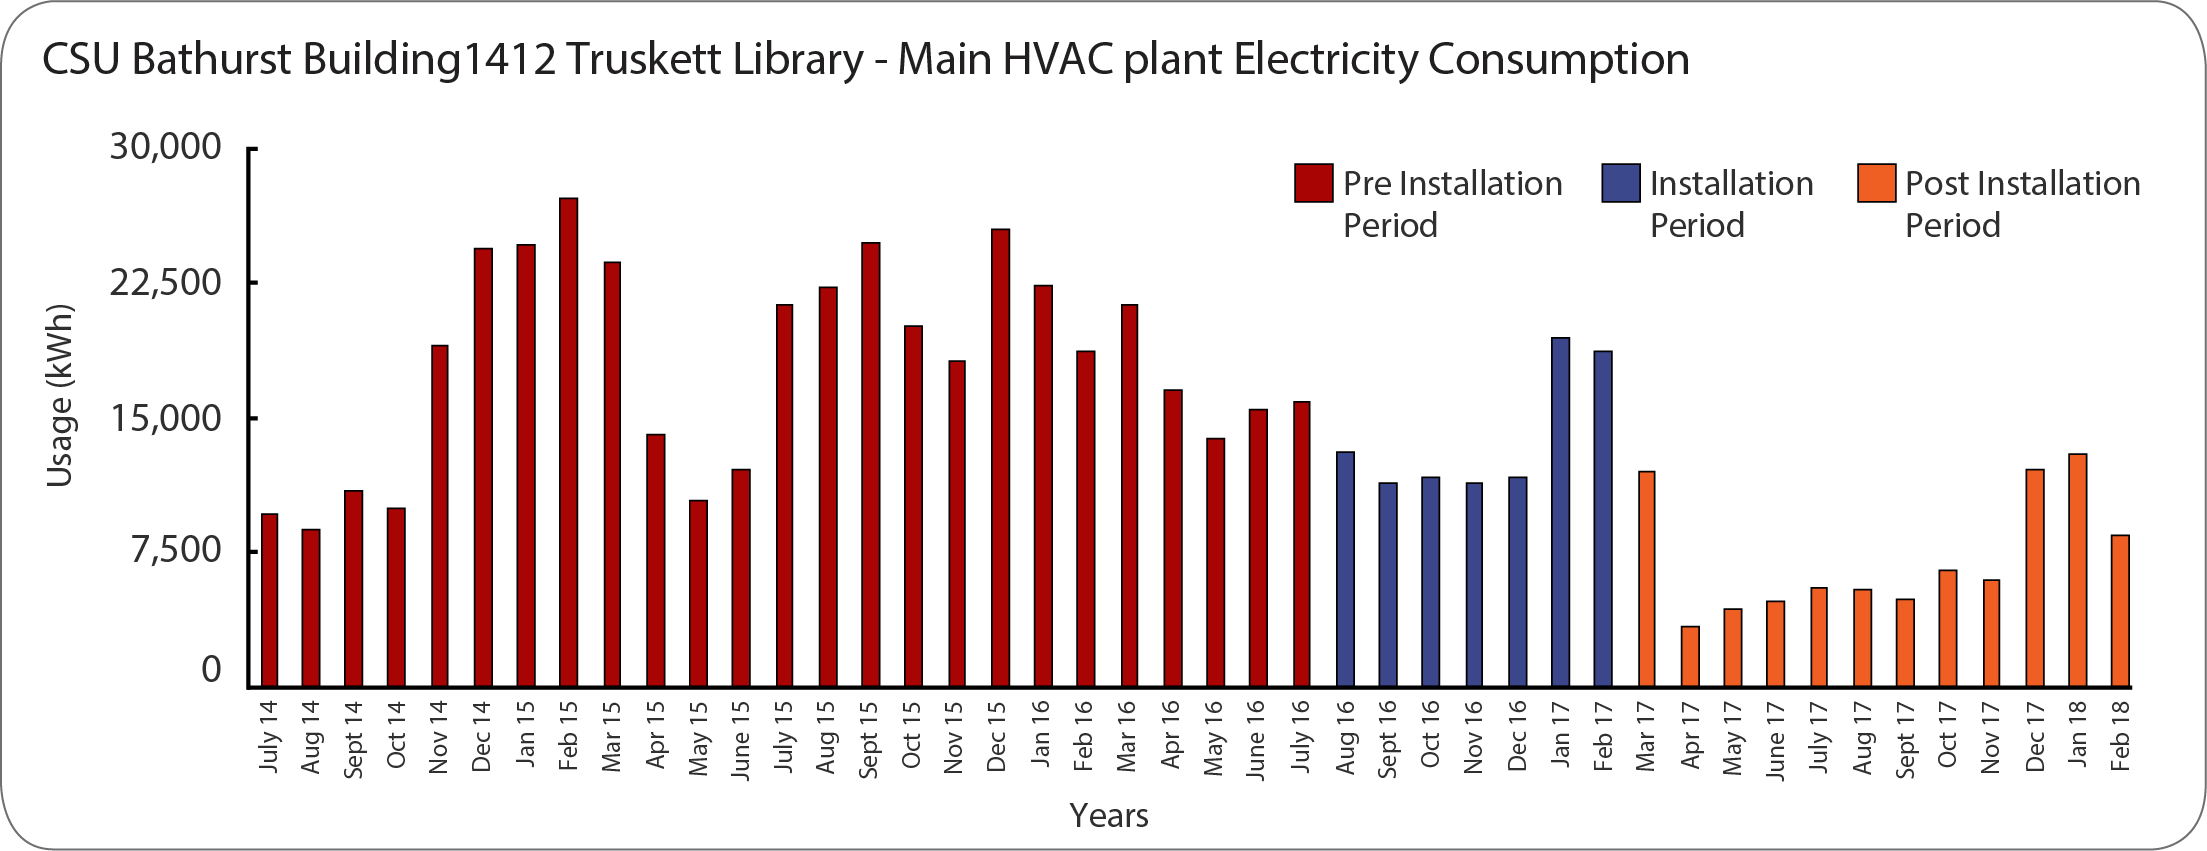 CSU EPC HVAC plant electricity consumption